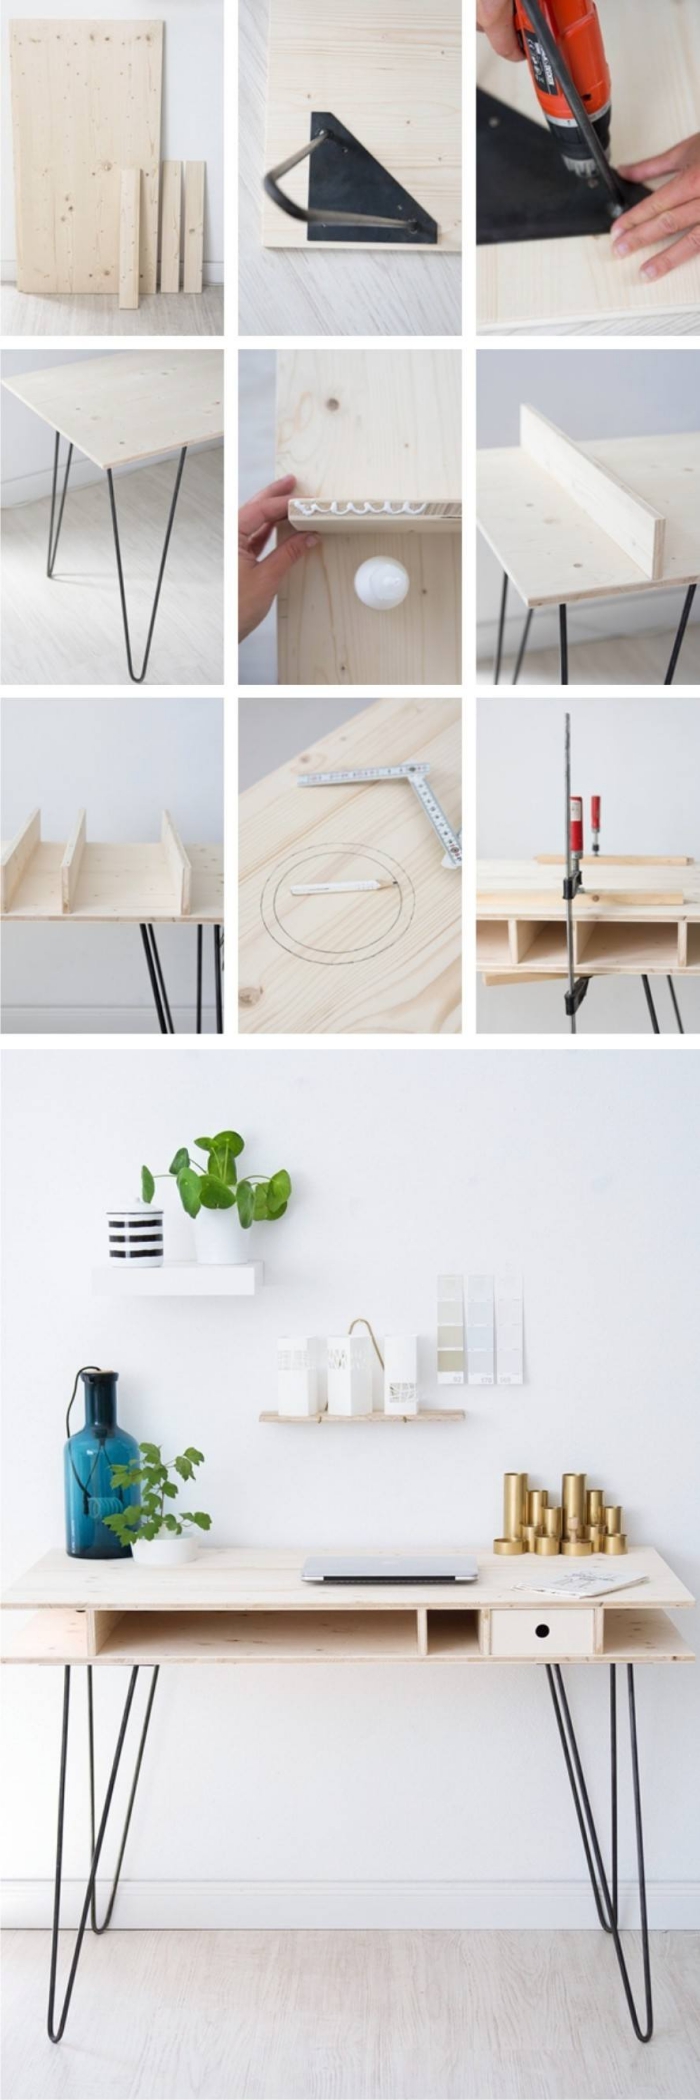 étapes à suivre pour réaliser un diy bureau en bois avec pieds en métal noirci, tutoriel bricolage de bureau moderne